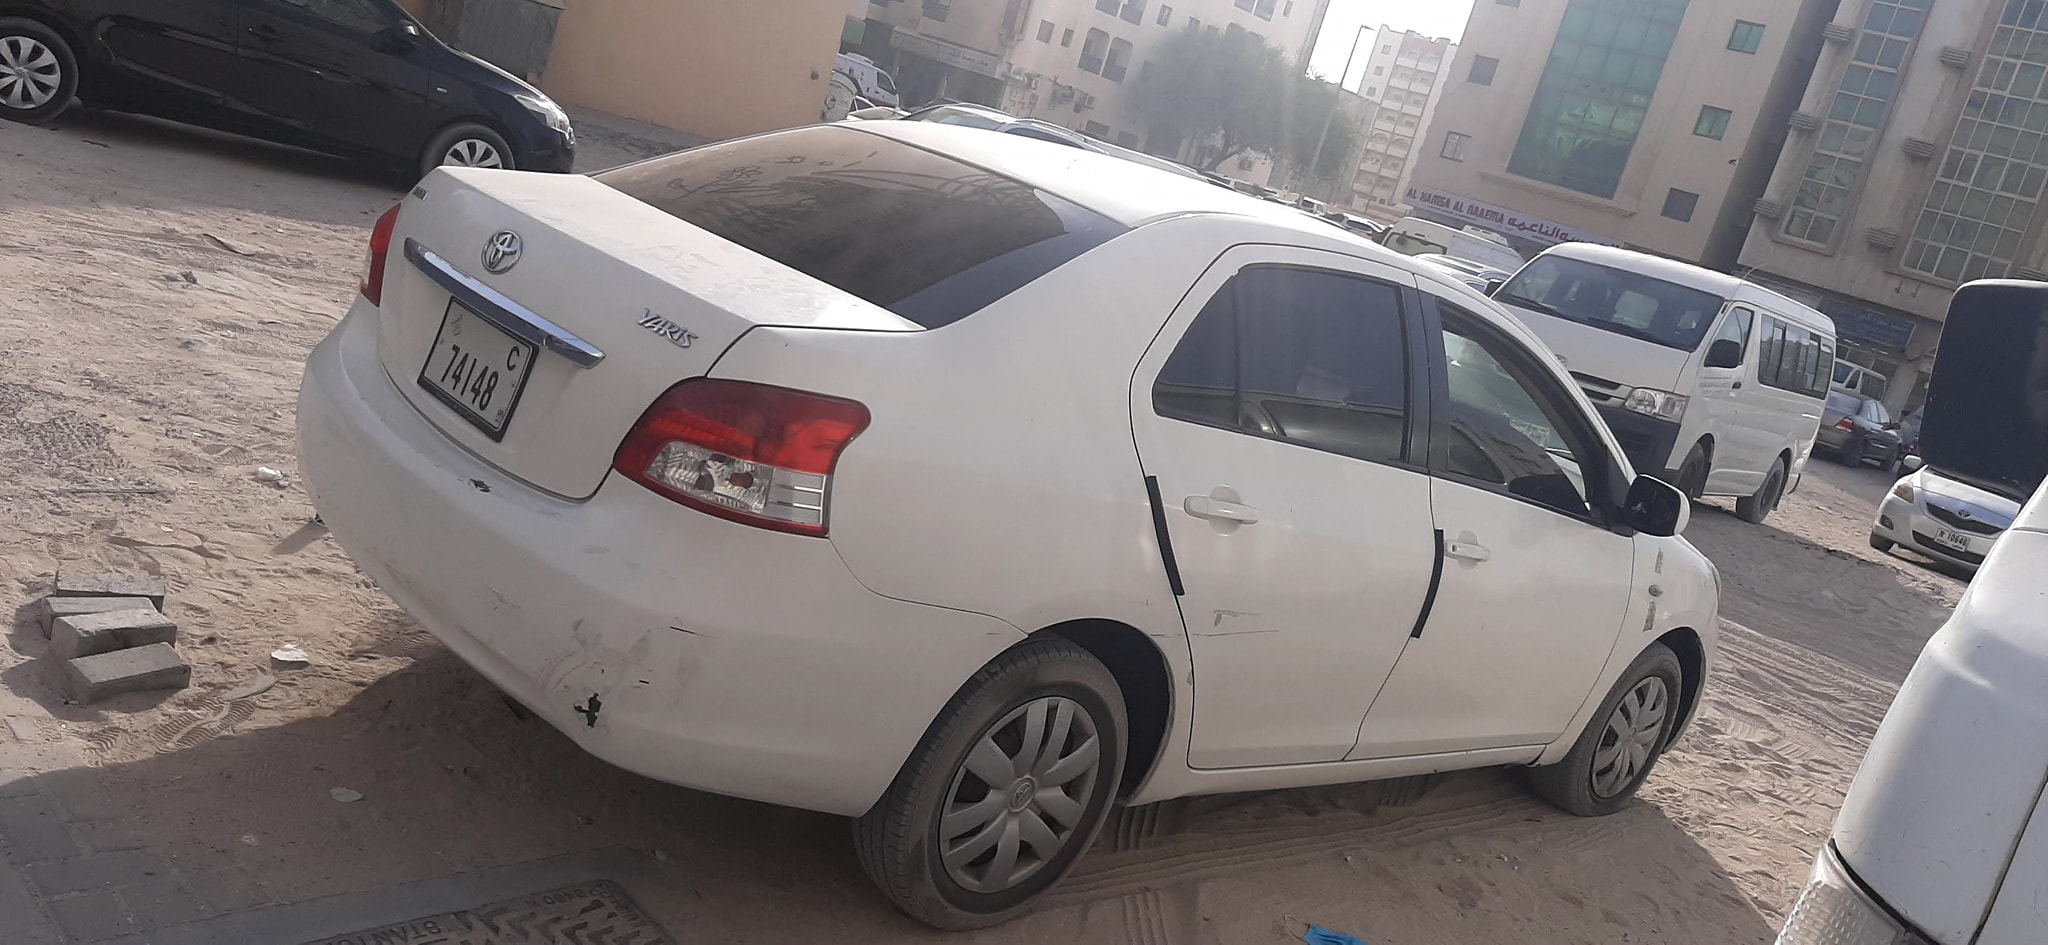 سيارات دبي الشارقة مستعملة للبيع في الامارات كاش و تقسيط ارخص الاسعار بالصور